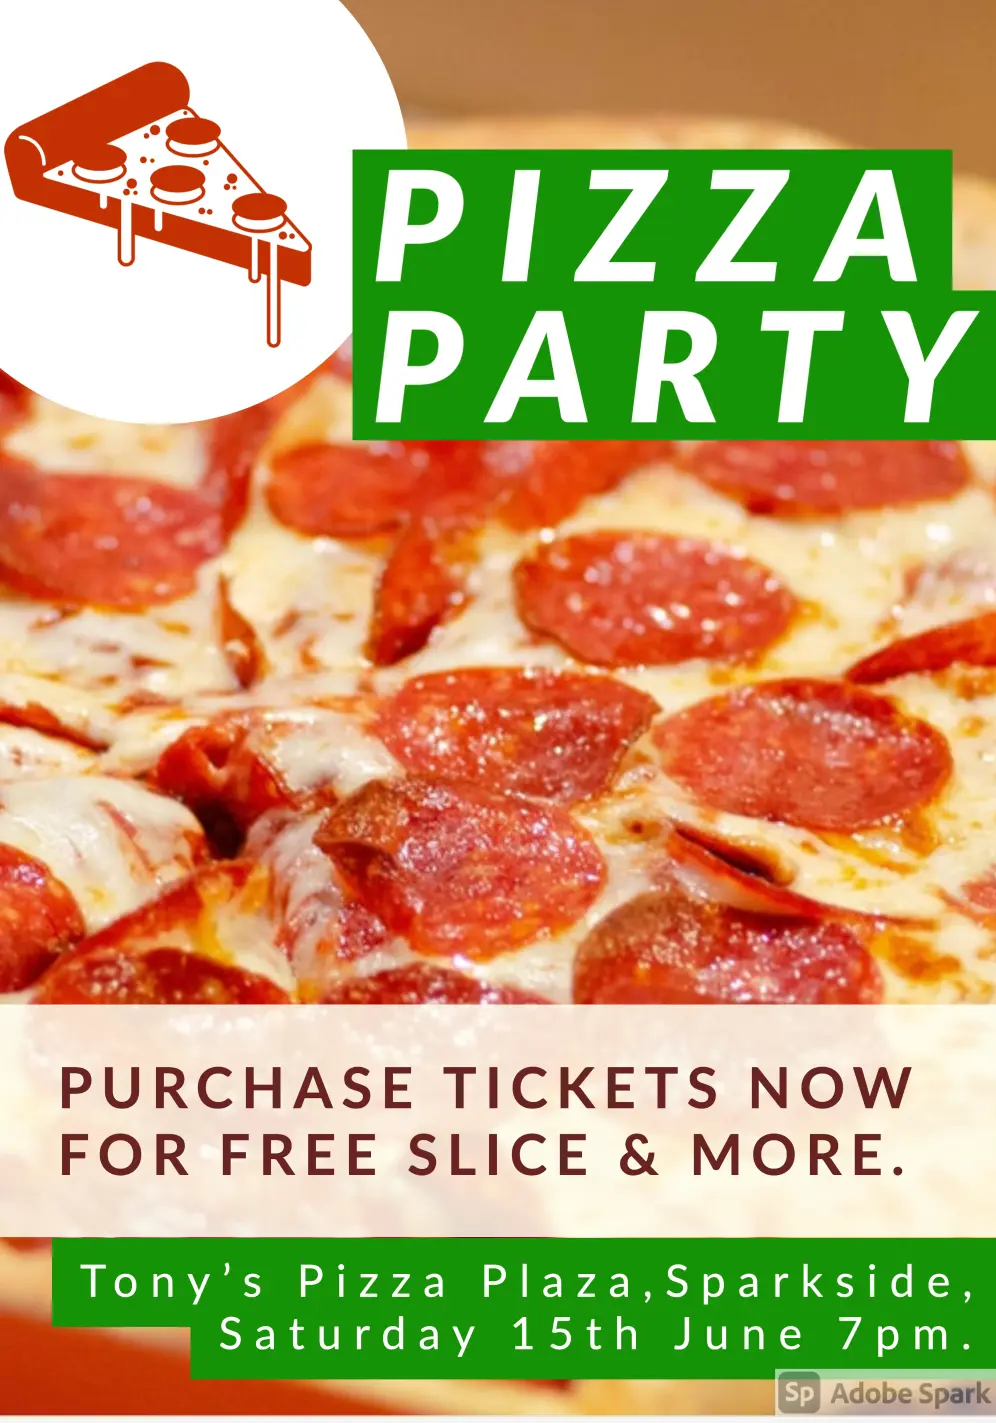 Tony's pizza plaza flyer